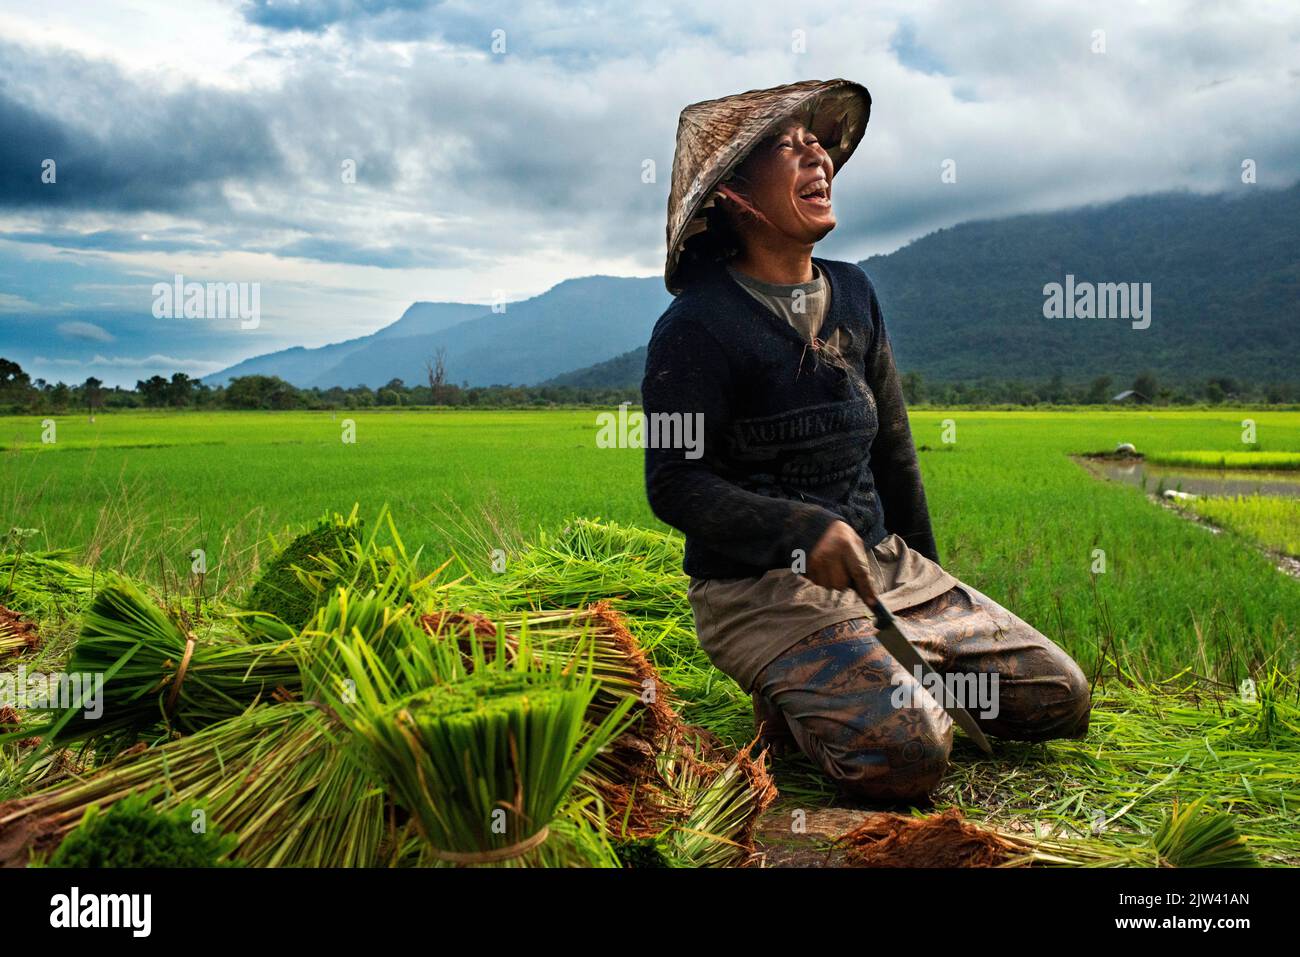 Mujer que trabaja en la plantación de ricefiel cerca de Kiet Ngong, Laos. Los métodos de cultivo de arroz aceleran drásticamente el cambio climático. Por más de $ 3 factura Foto de stock